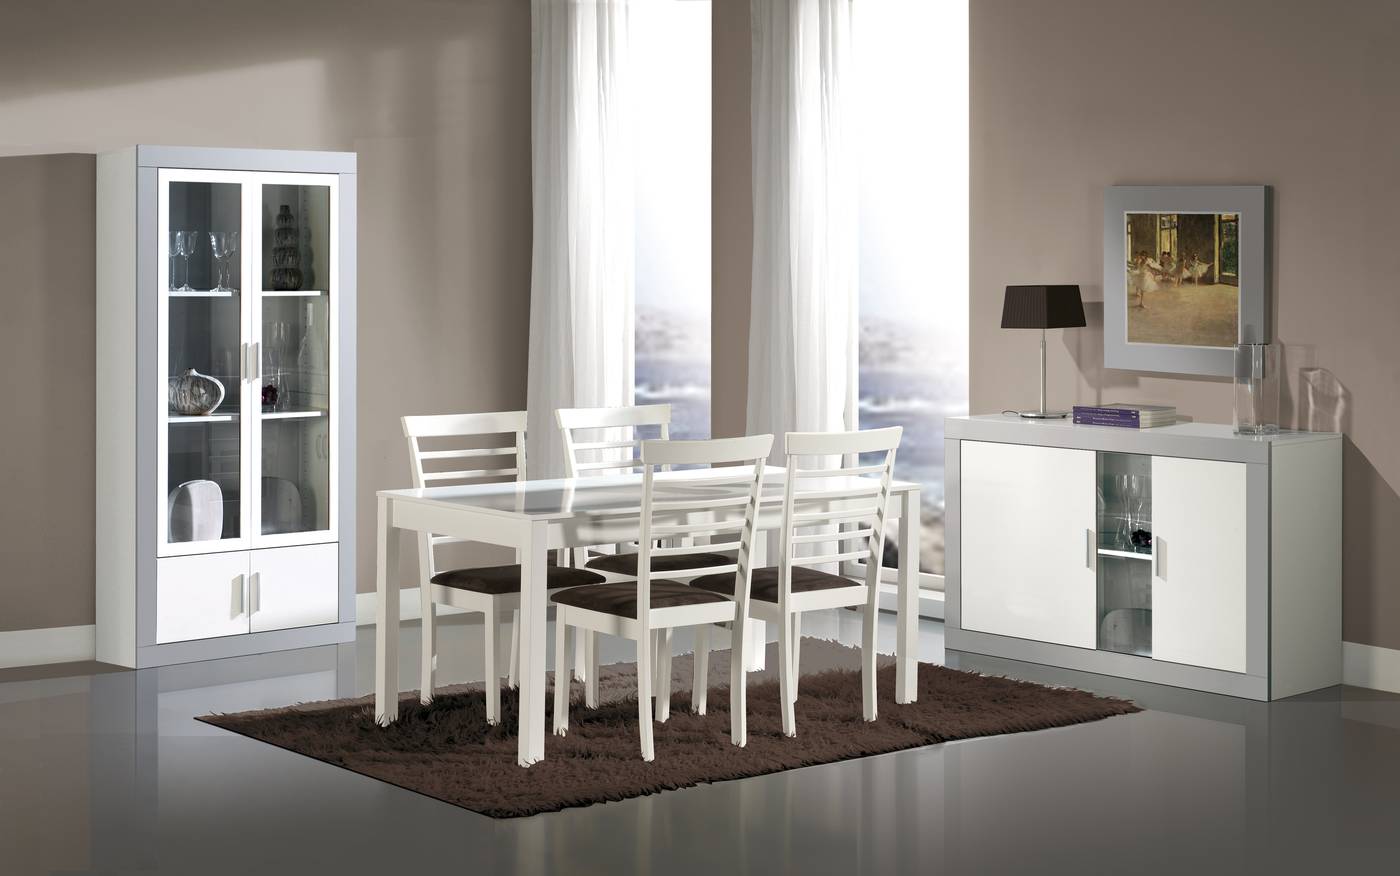 Aparador Blanco-Ceniza/Plata - Aparador para salón/comedor, color blanco combinado con color ceniza o plata